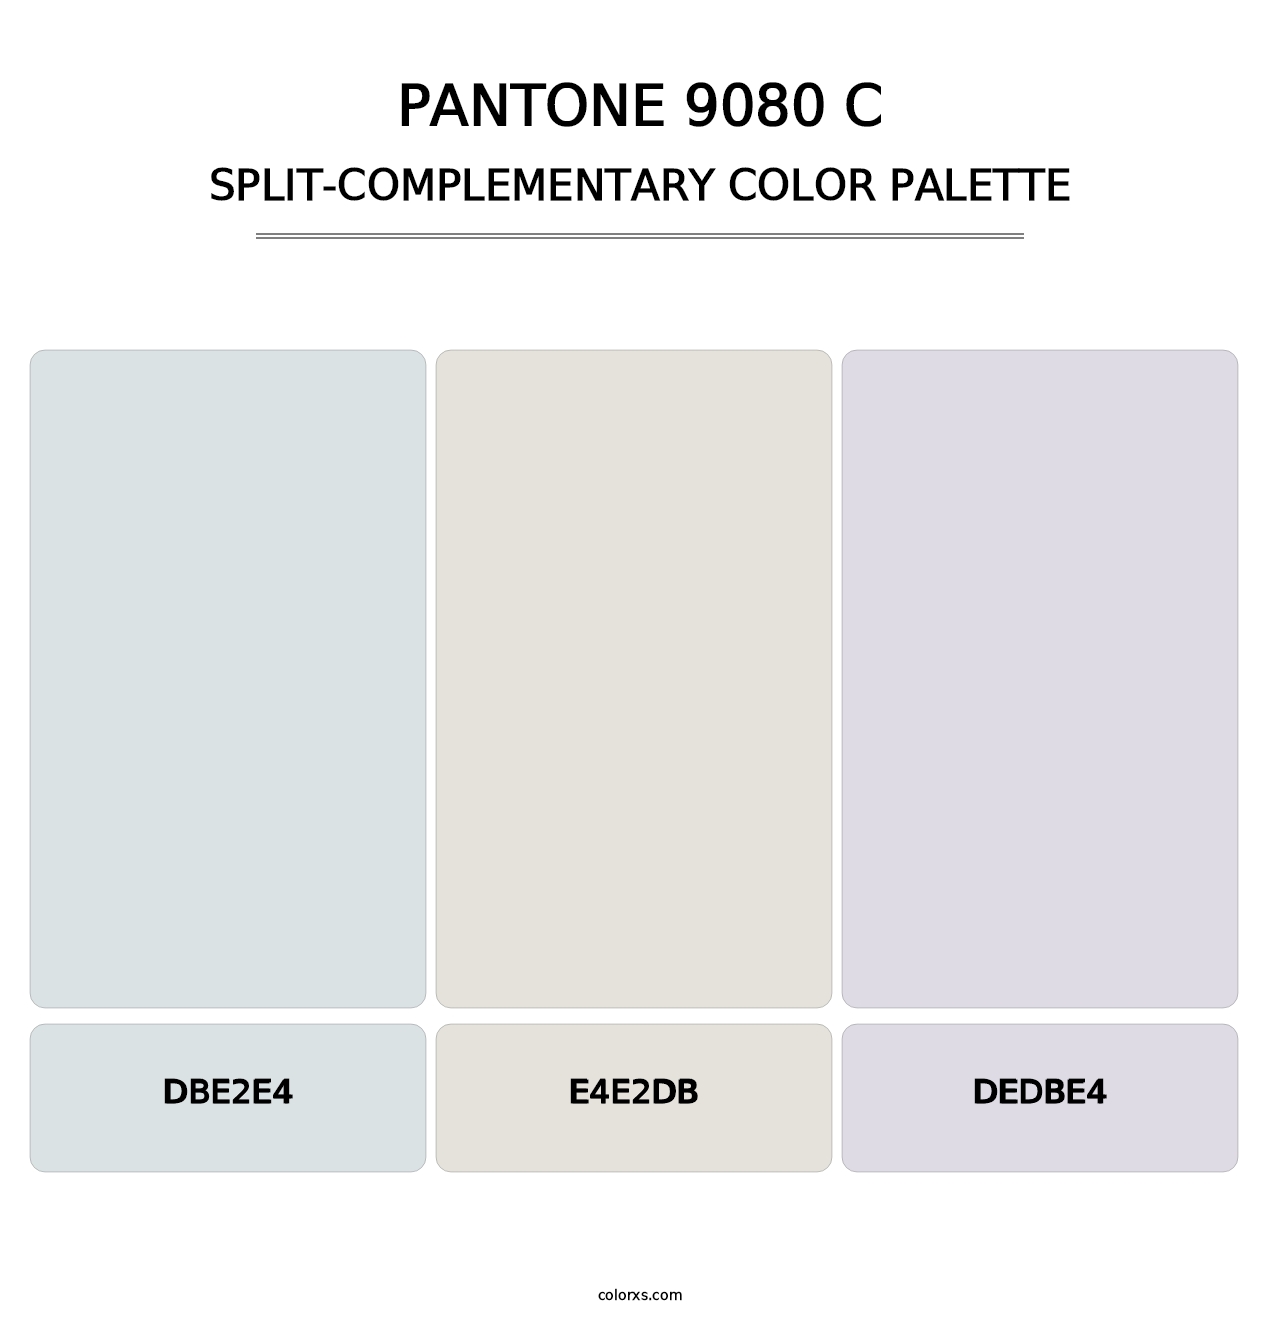 PANTONE 9080 C - Split-Complementary Color Palette